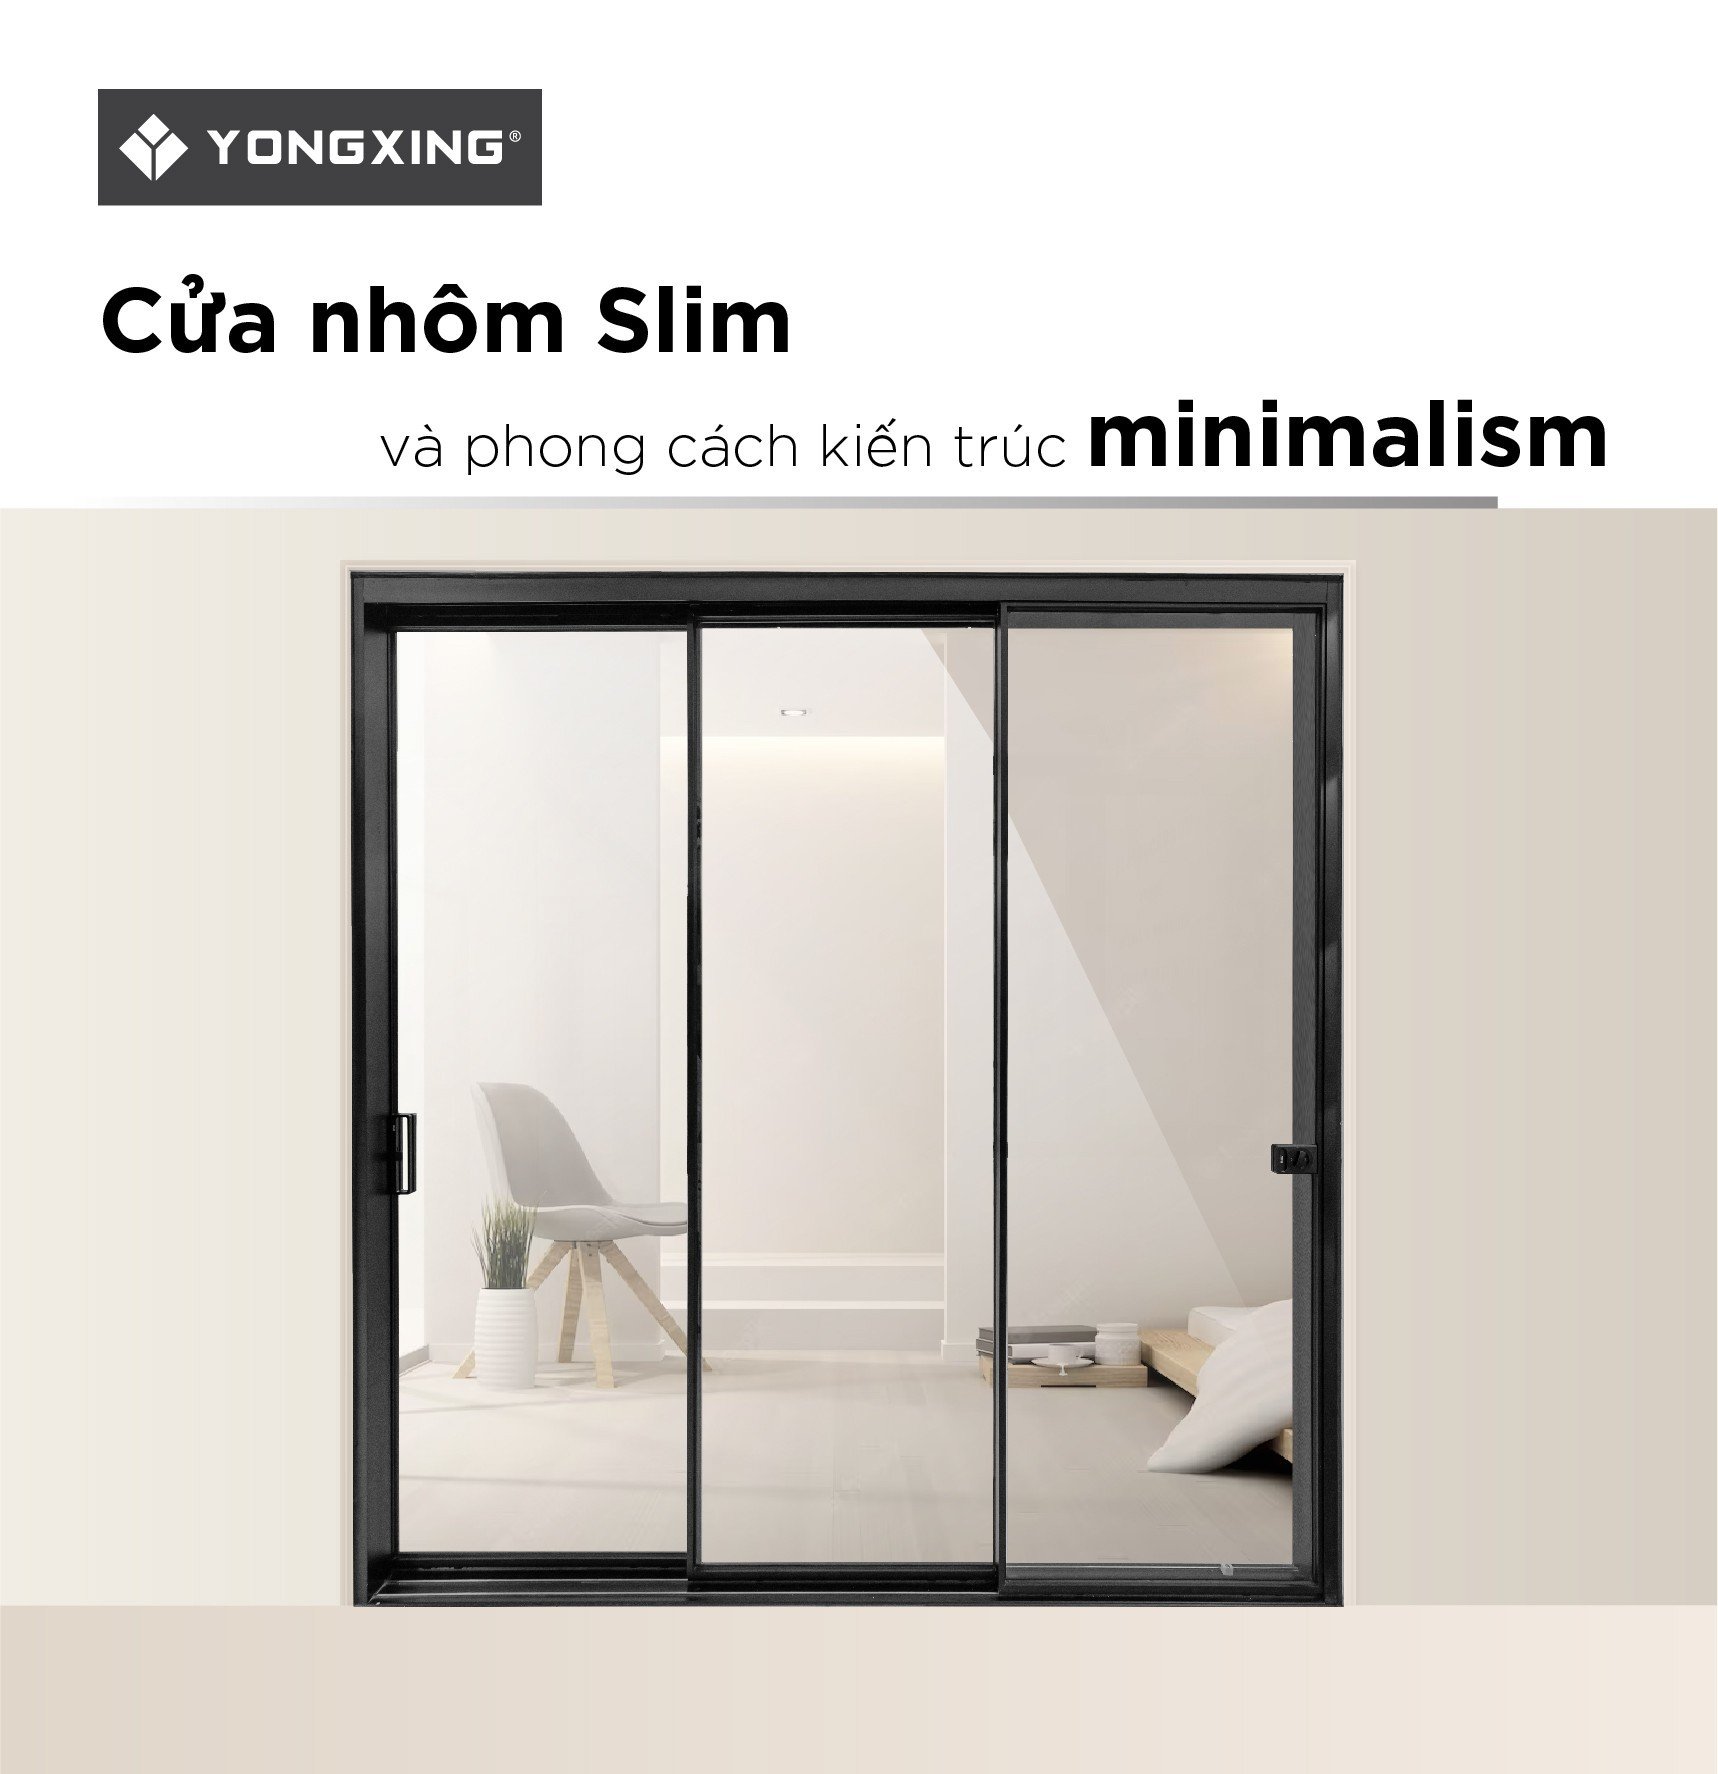 Cửa nhôm slim và phong cách kiến trúc Minimalism1 2